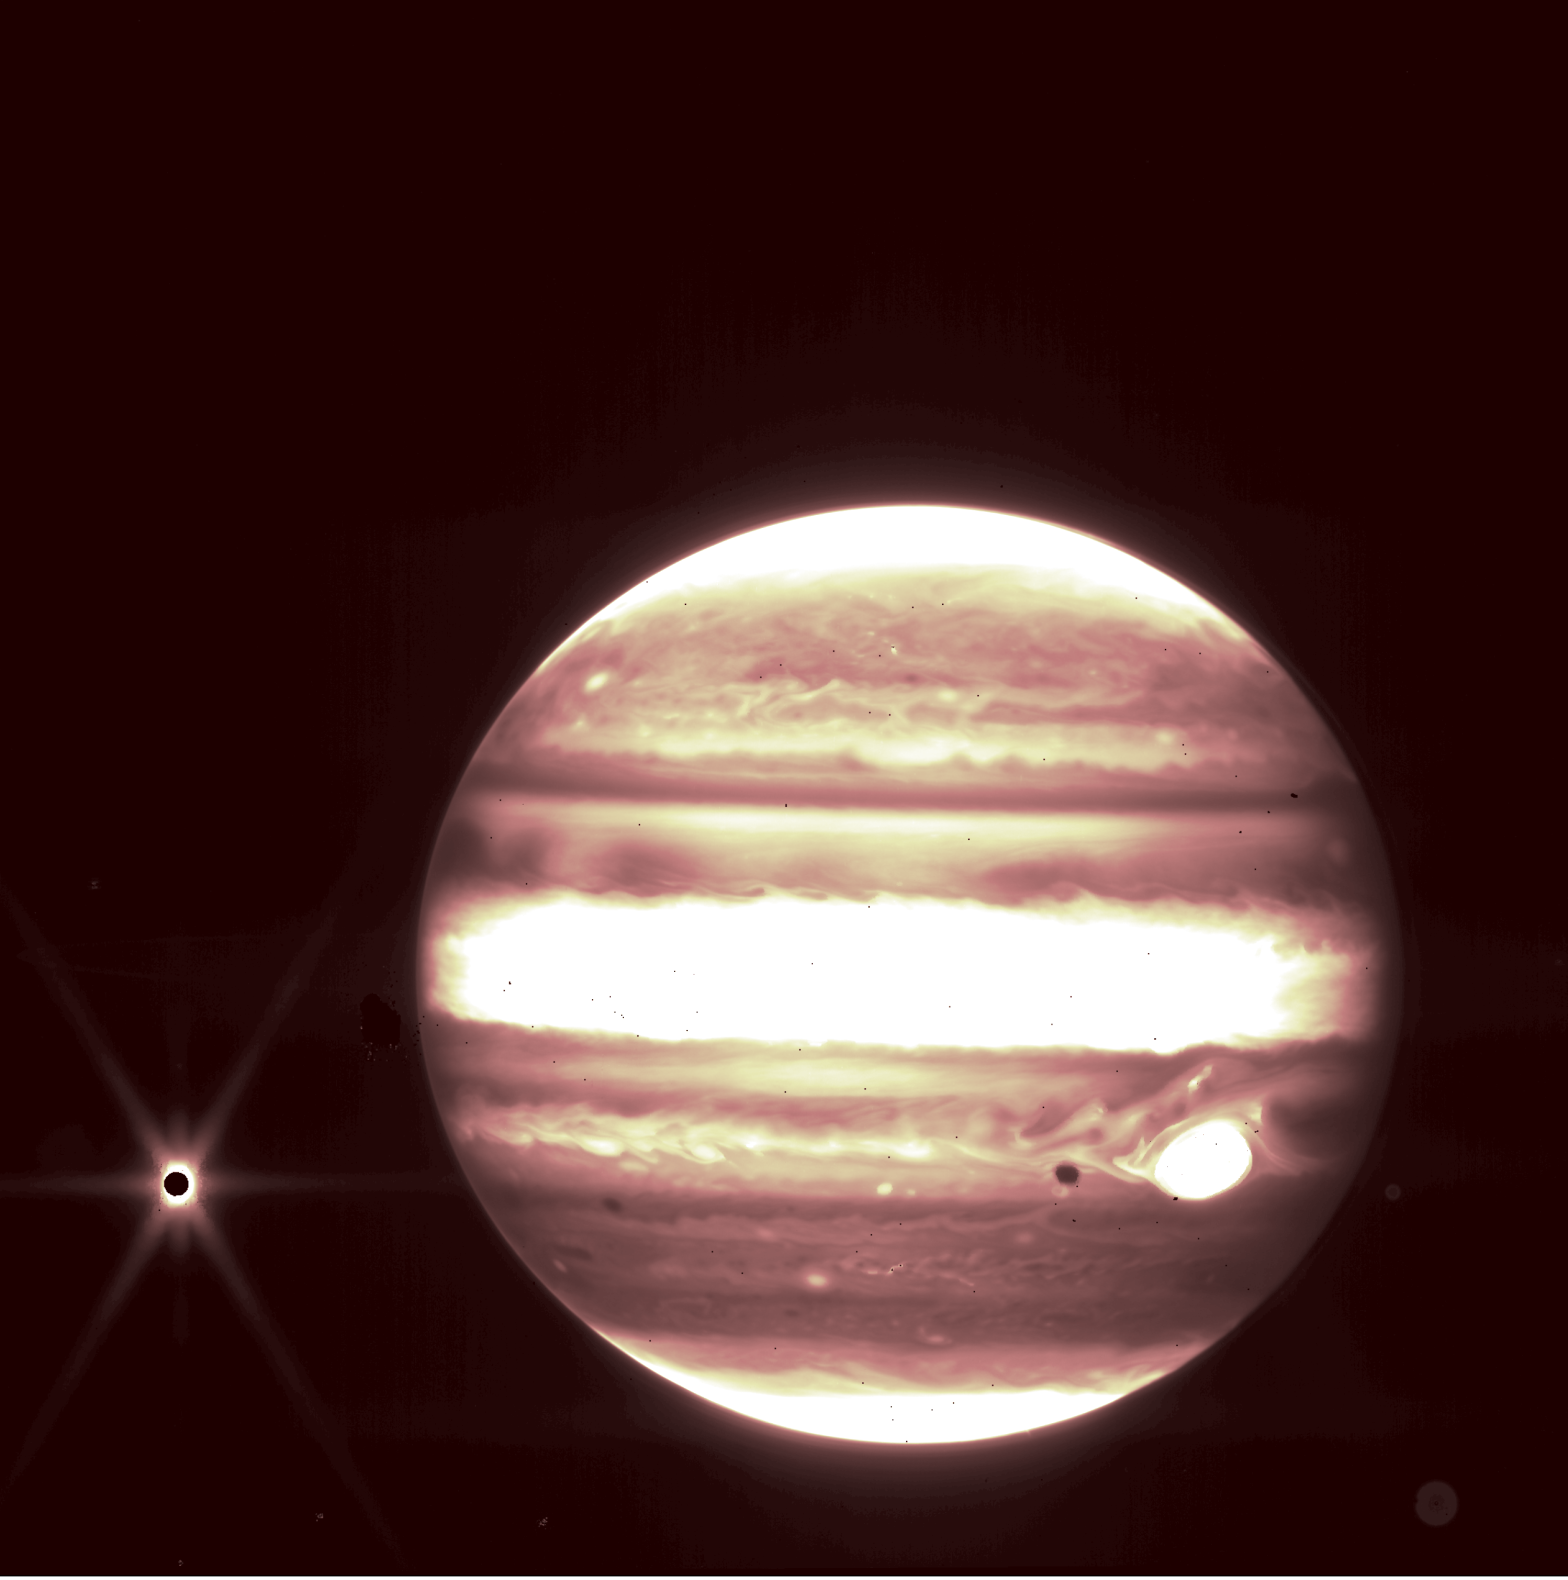 Immagine di Giove dal telescopio James Webb.  (Immagine: NASA)